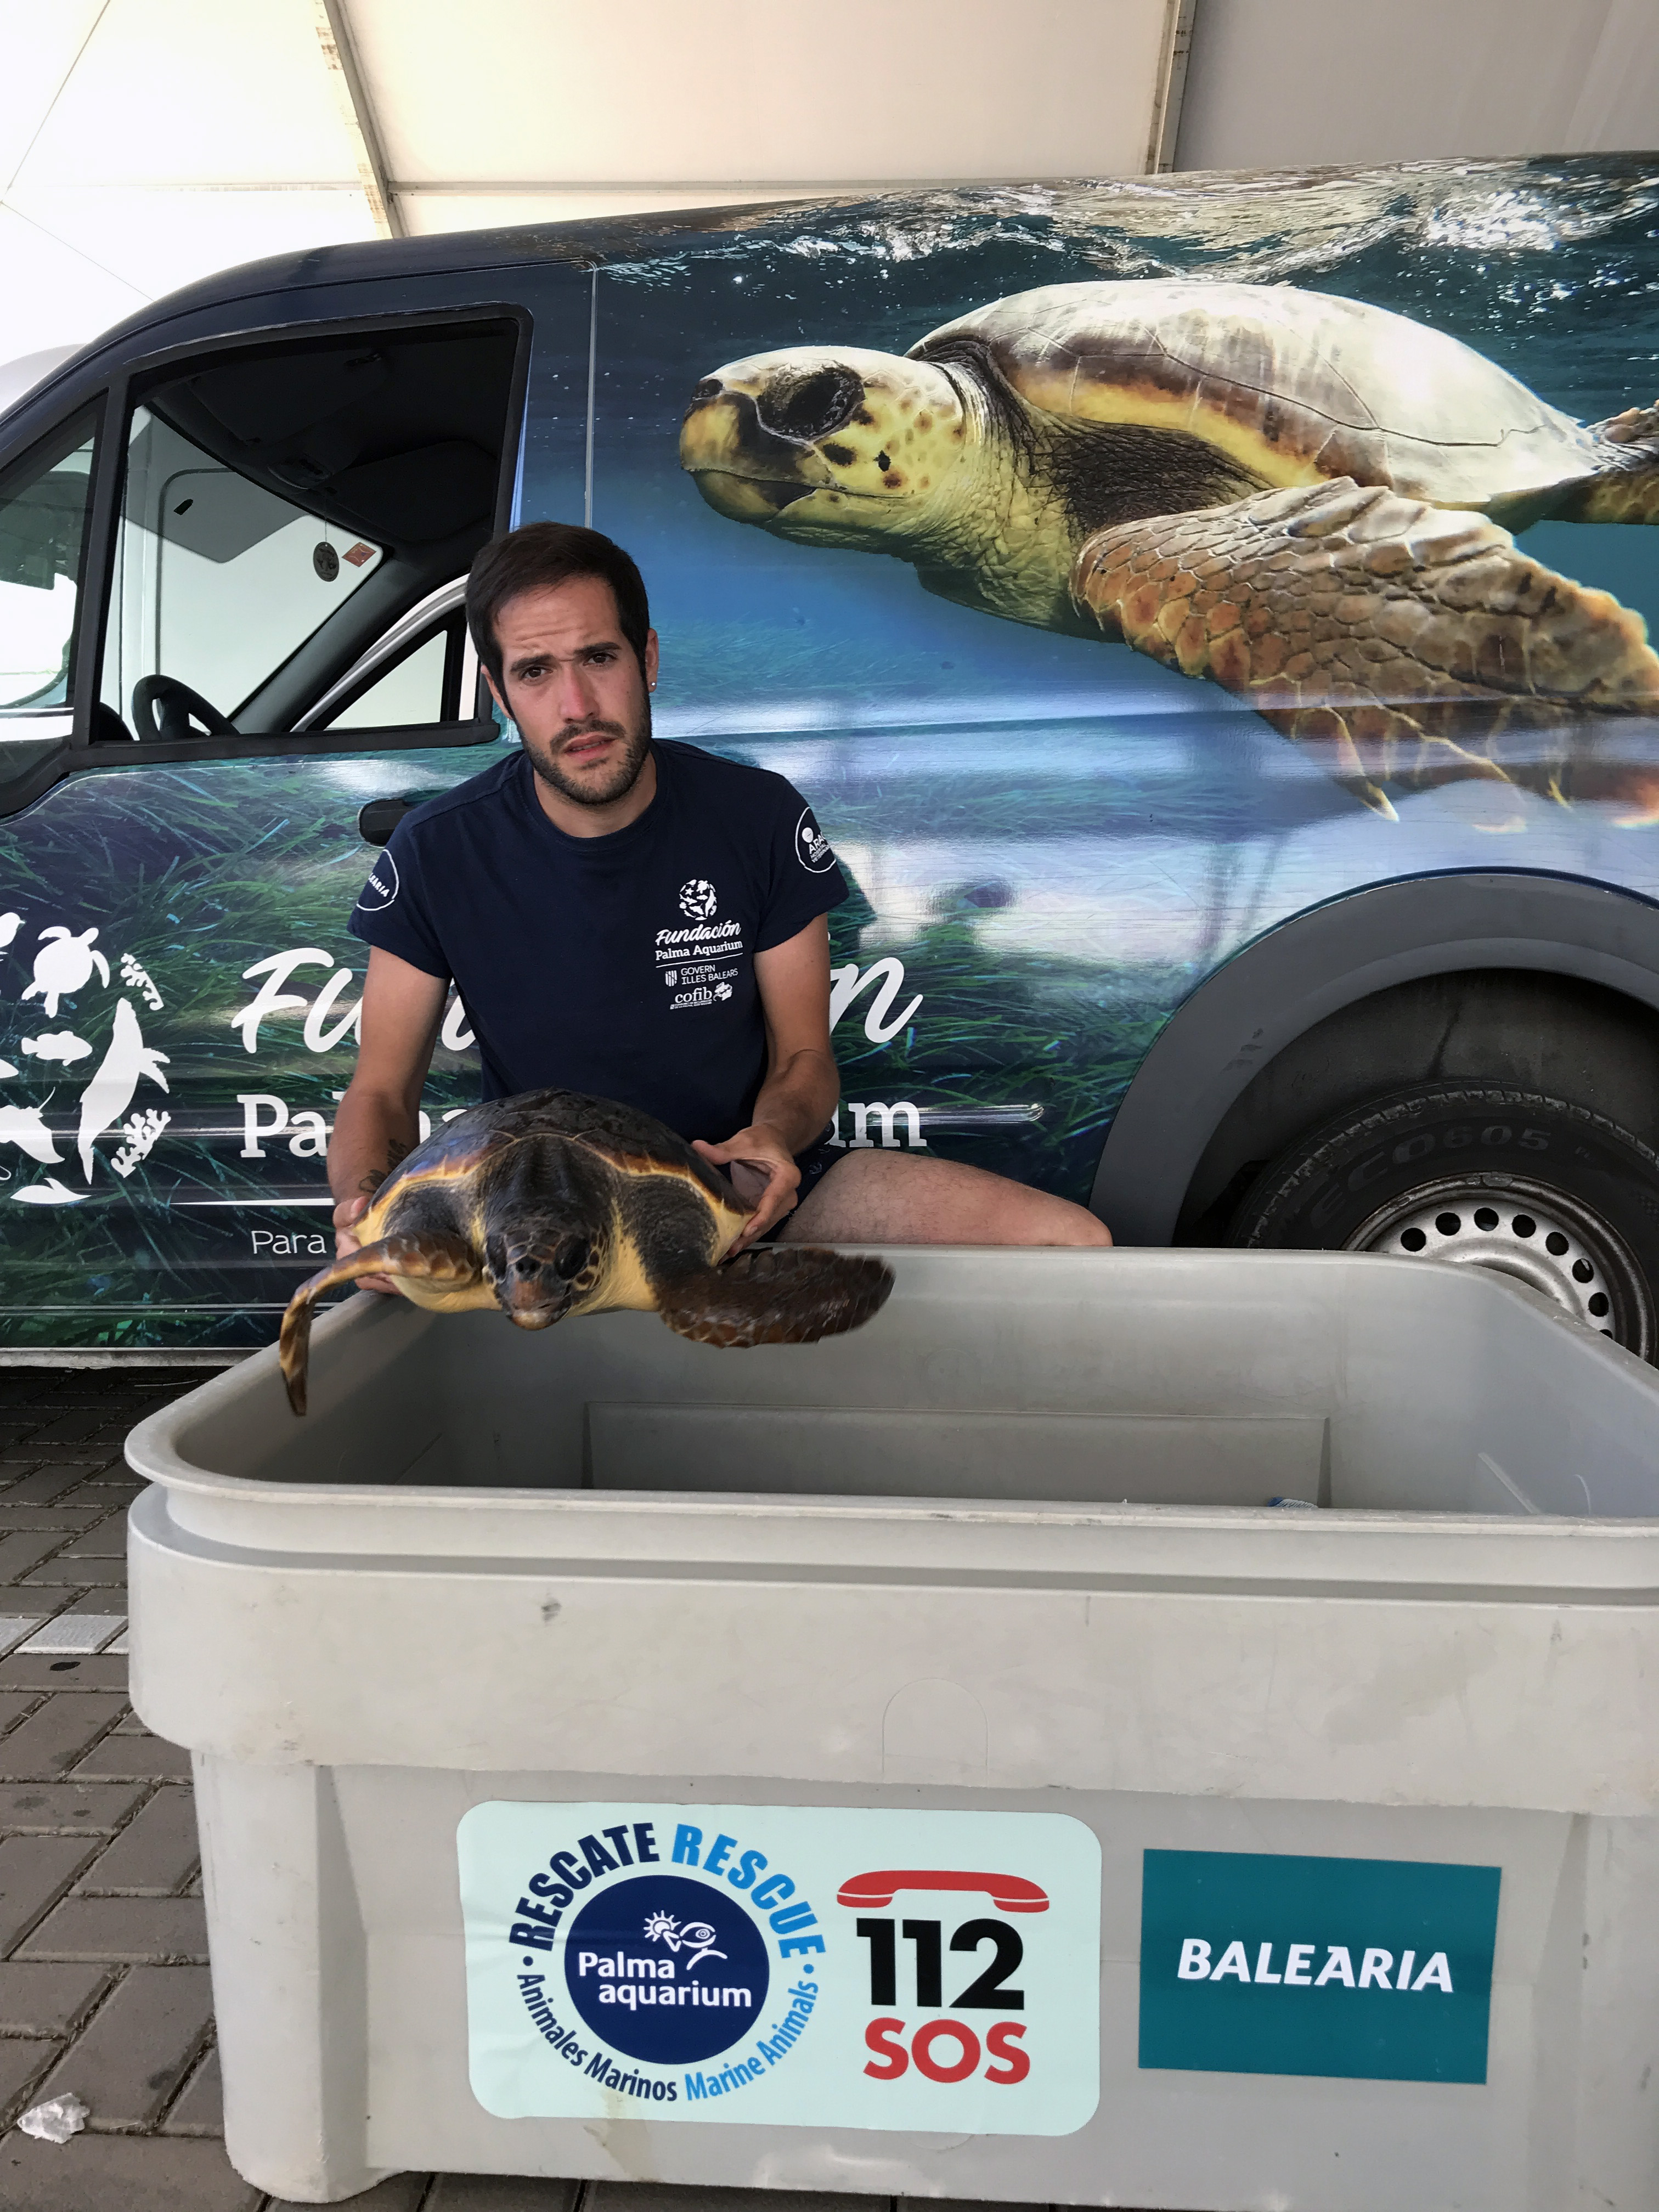 La Fundació Baleària facilitó el traslado de 173 tortugas en 2021 en el marco de su acuerdo con la Fundació Palma Aquarium